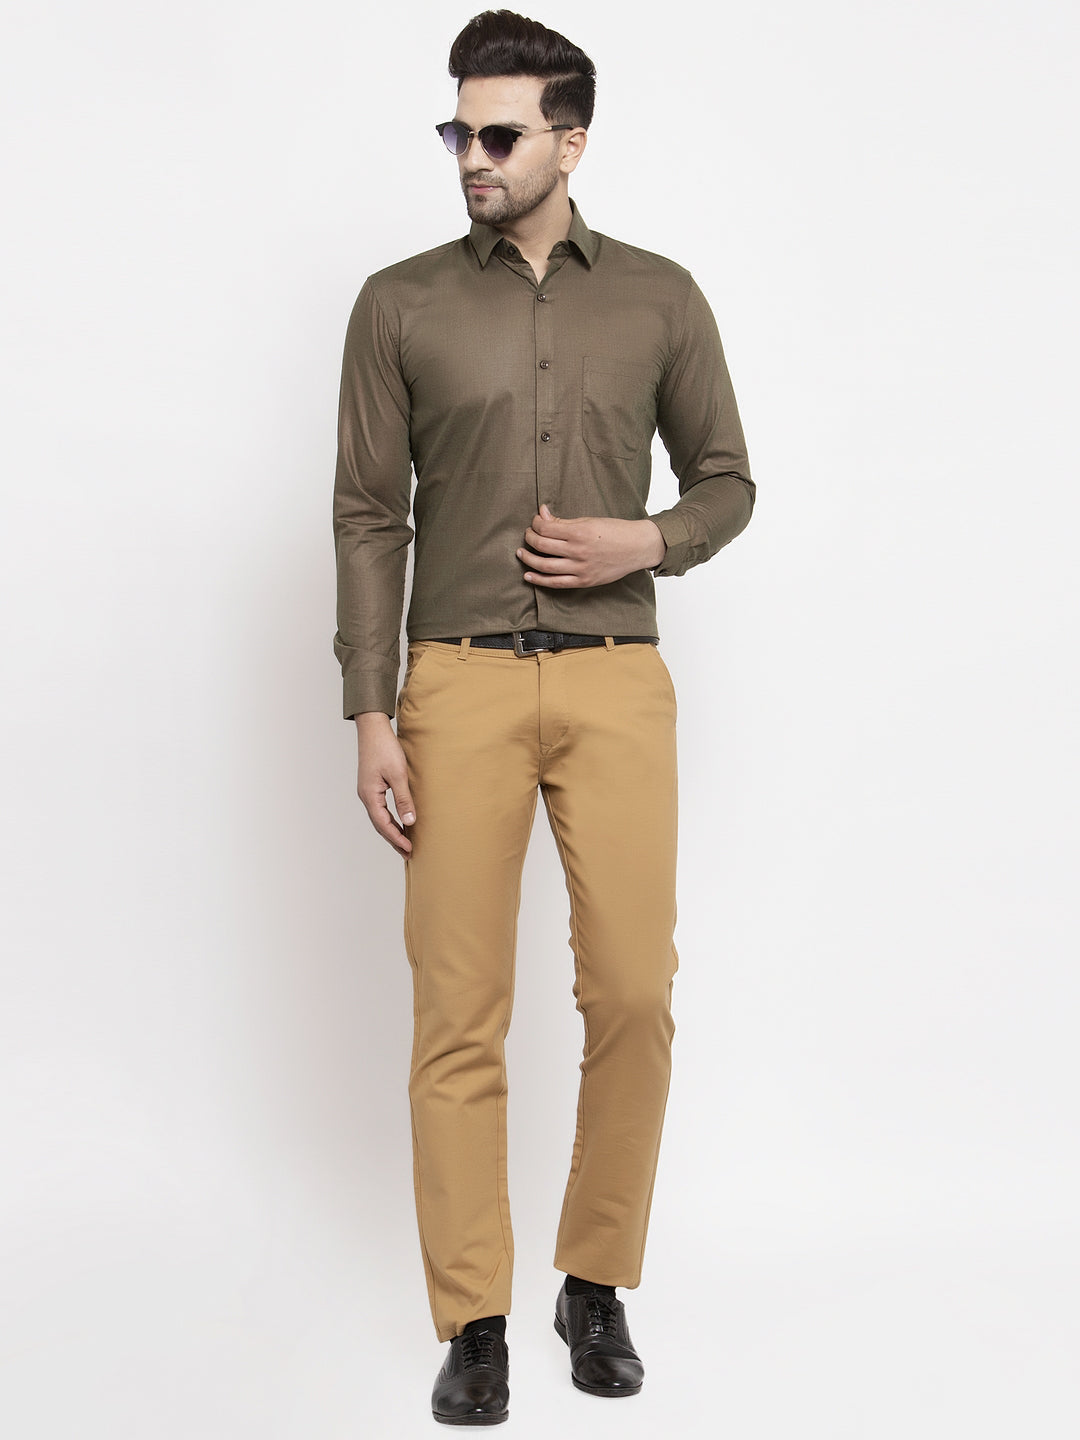 Men's Cotton Solid Dark Brown Formal Shirt's ( SF 361Dark-Brown ) - Jainish